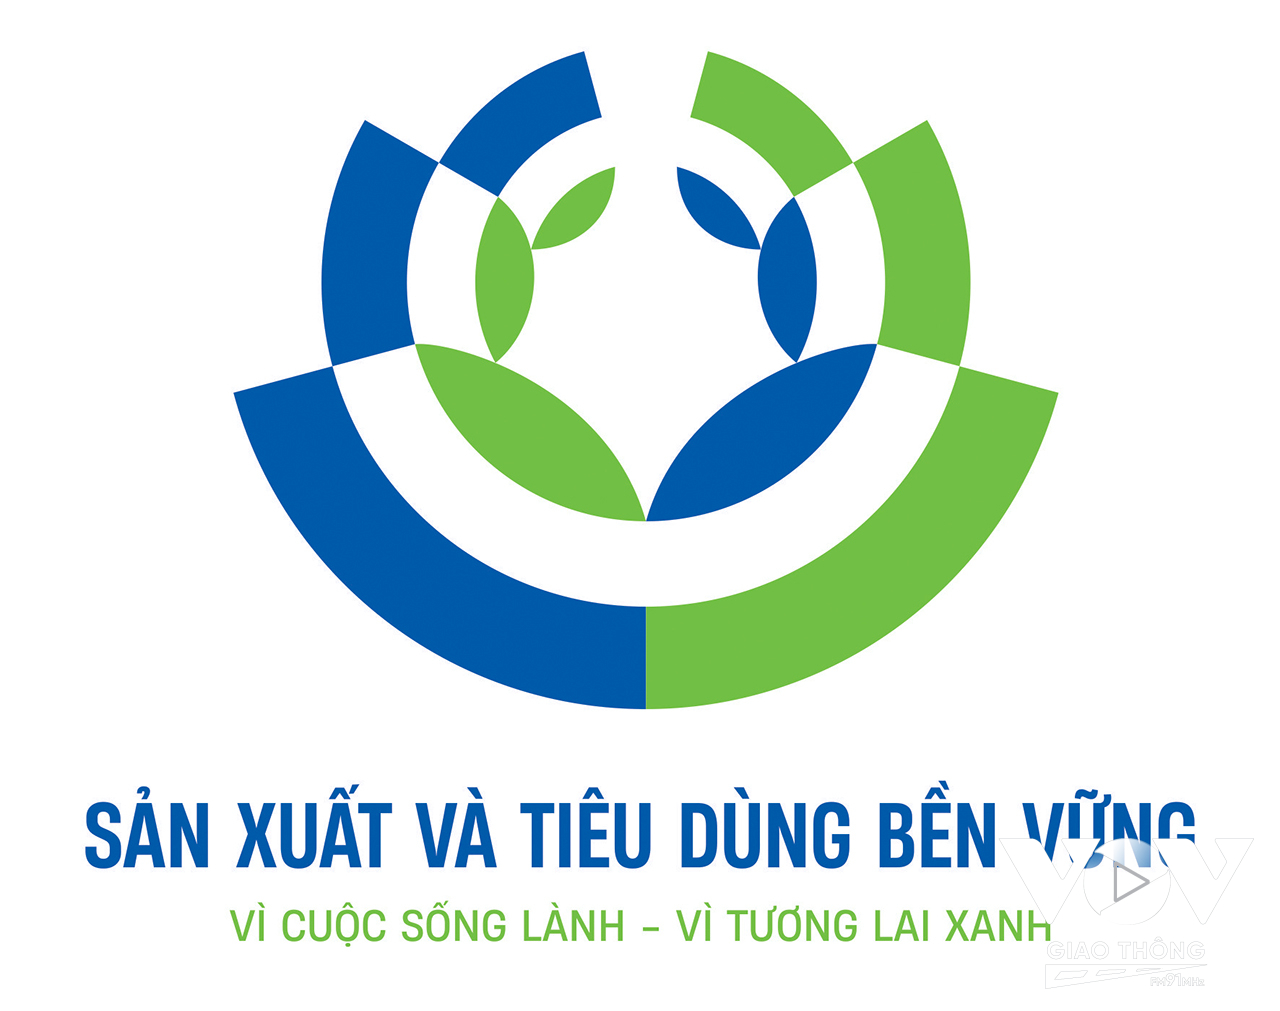 Tác phẩm đạt Giải Nhất Cuộc thi logo và slogan về sản xuất và tiêu dùng bền vững